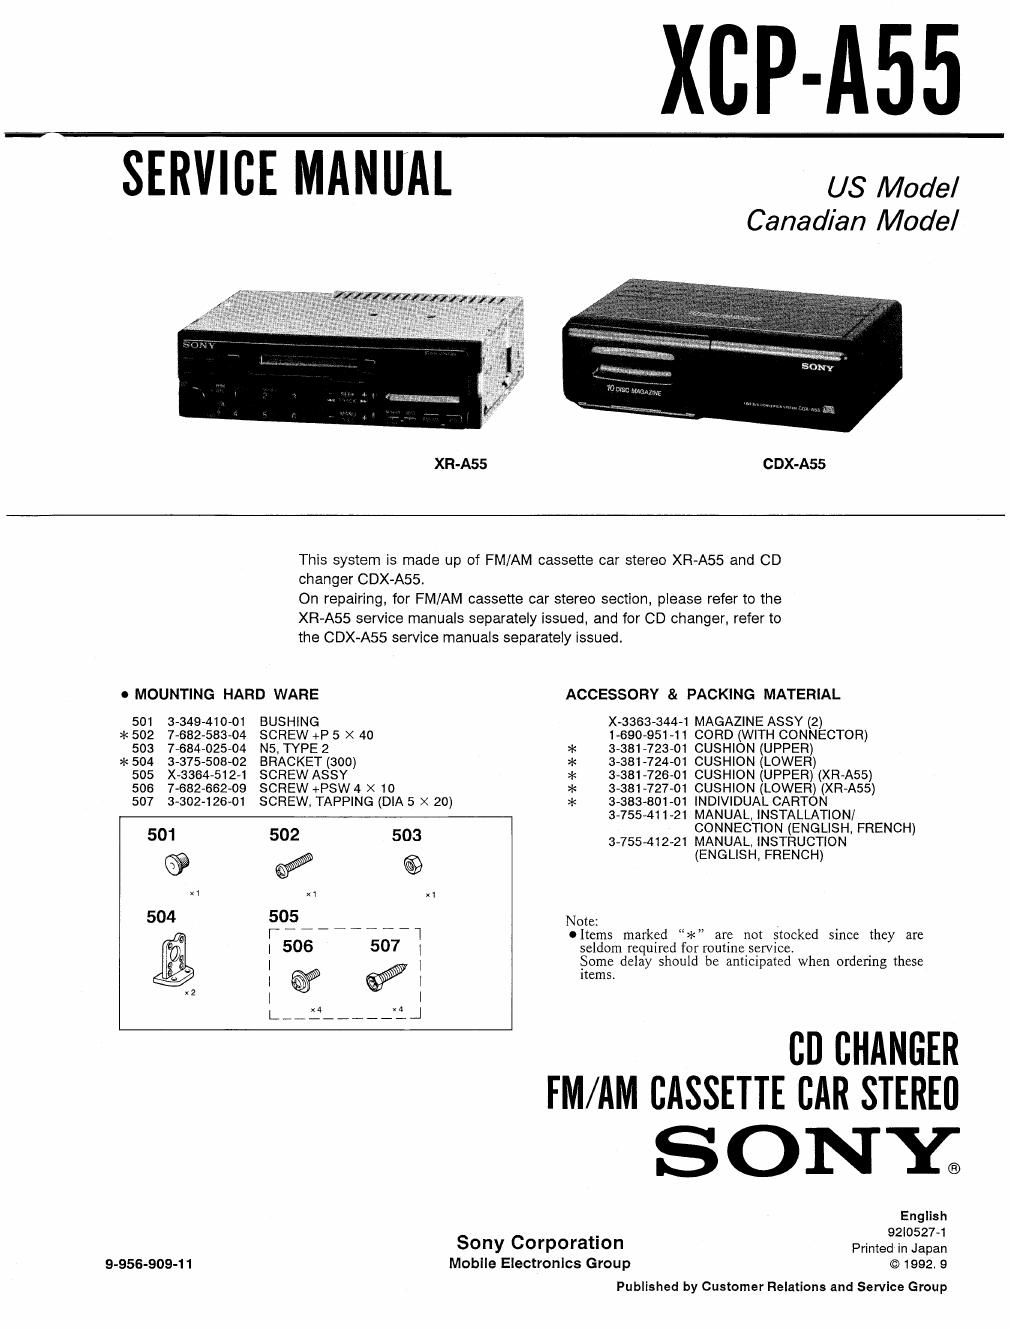 sony xcpa 55 service manual